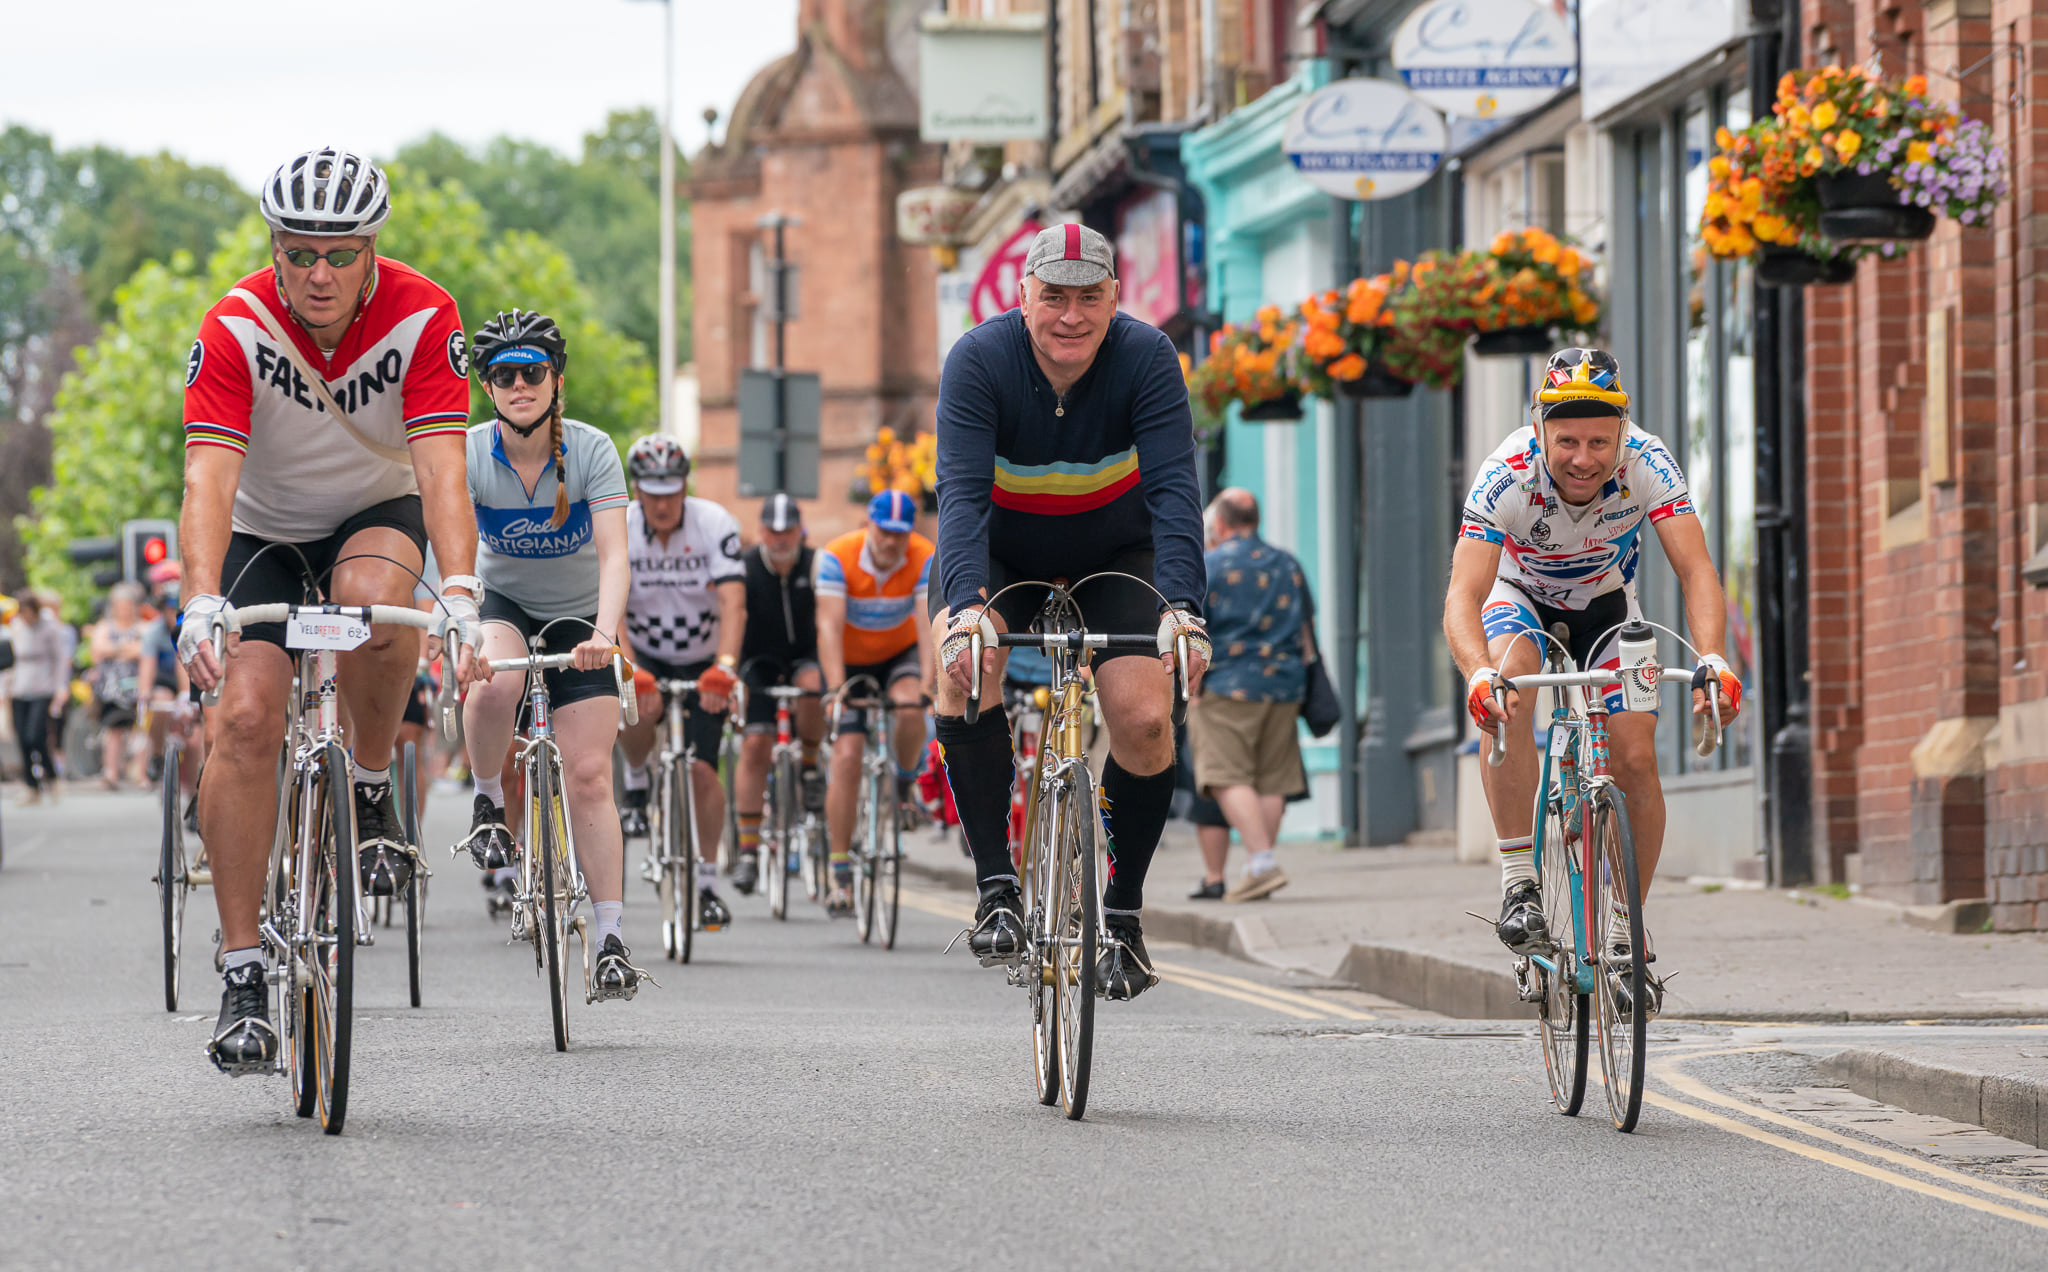 Cyclists in the Velo Retro event in Cumbria